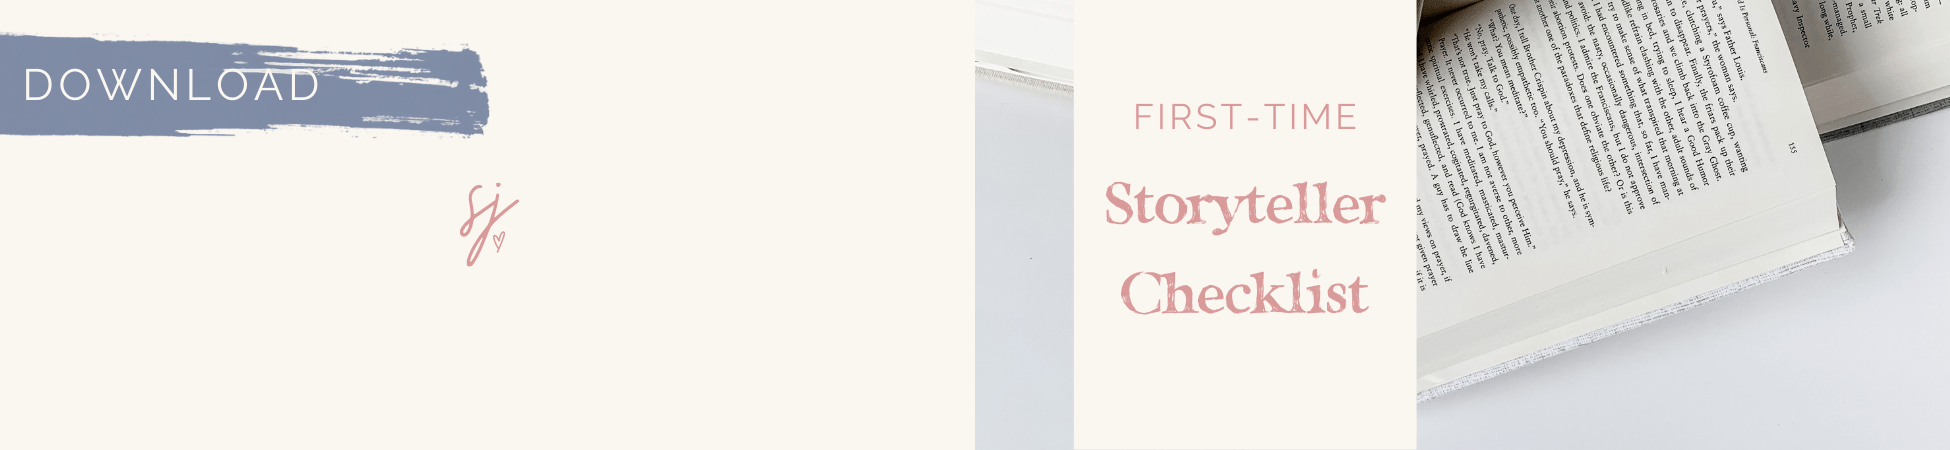 First-time Storyteller Checklist